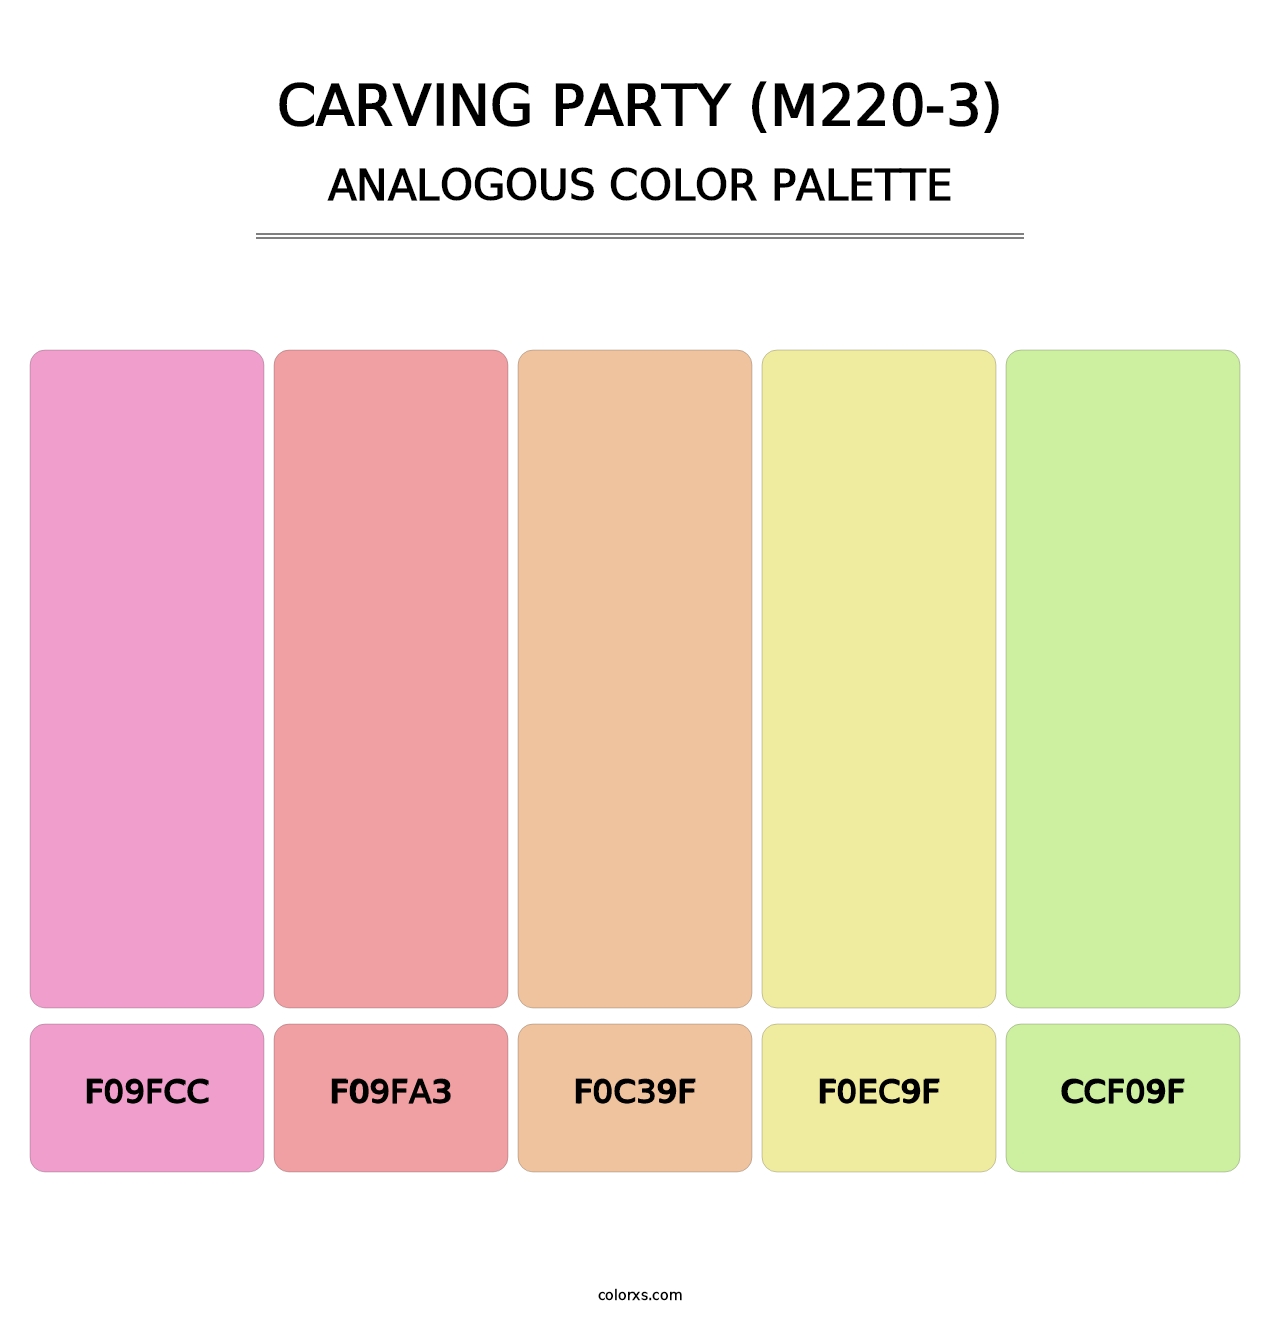 Carving Party (M220-3) - Analogous Color Palette